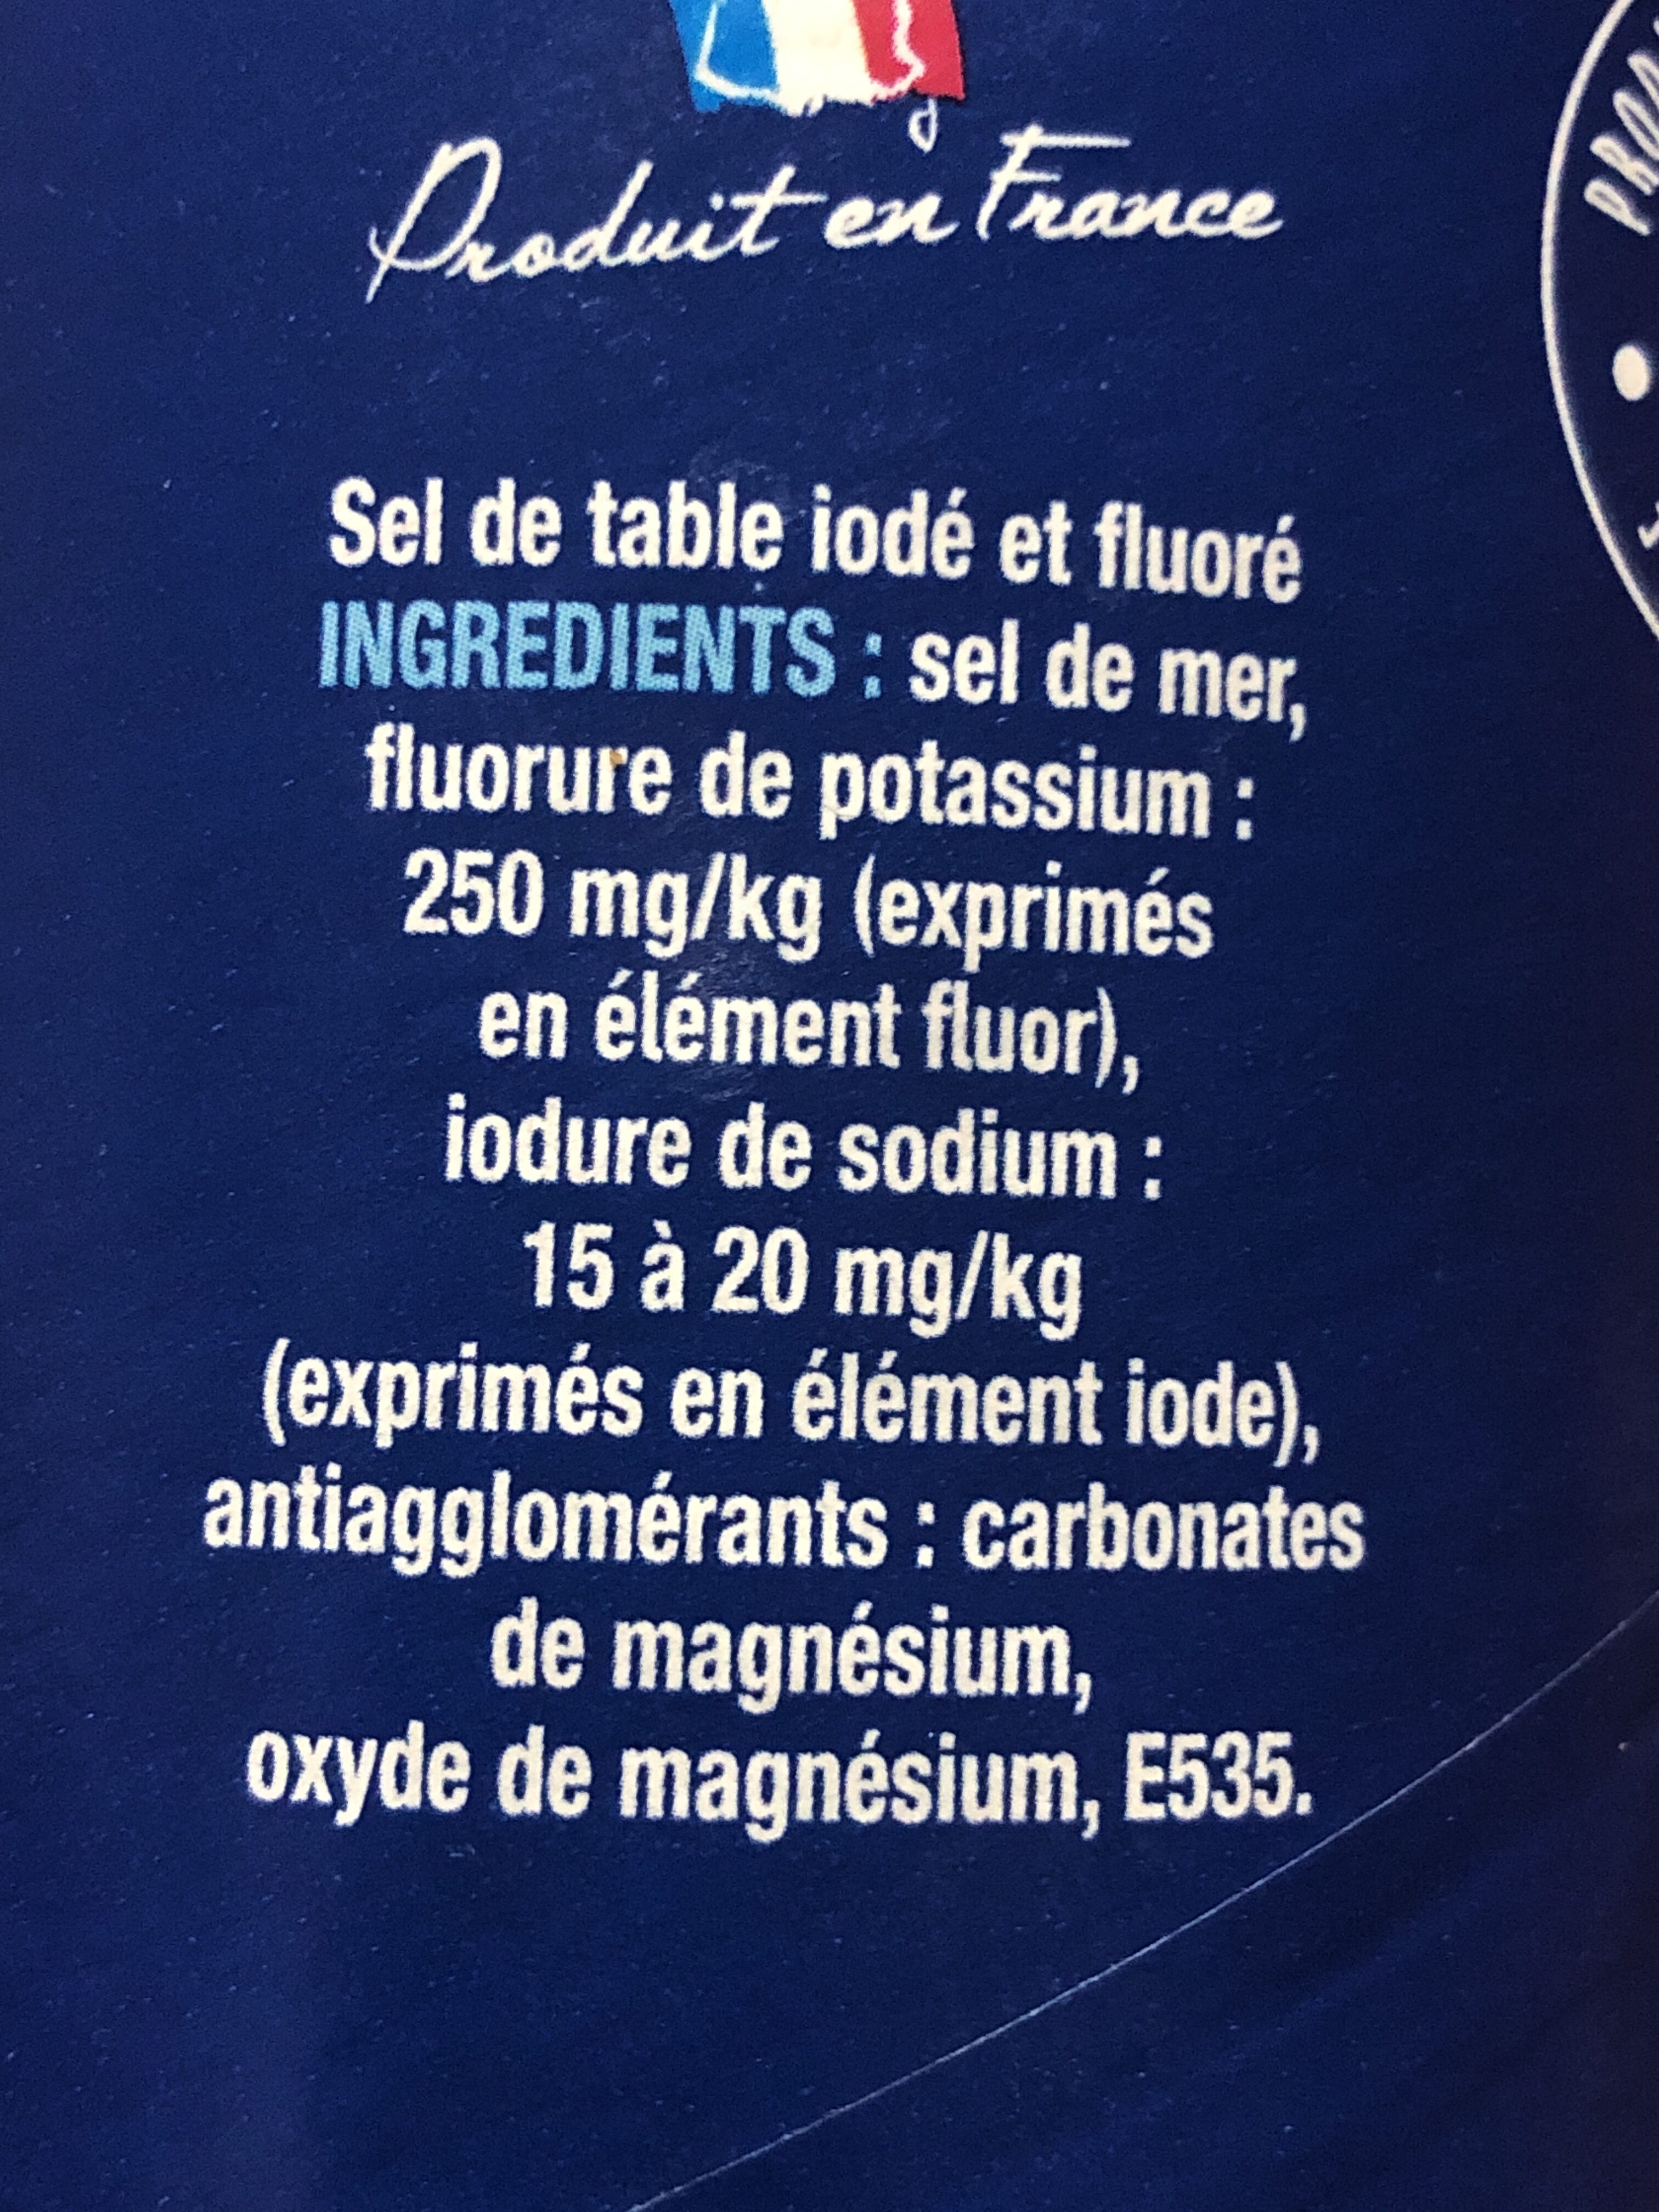 Sel fin iodé et fluoré - Ingrédients